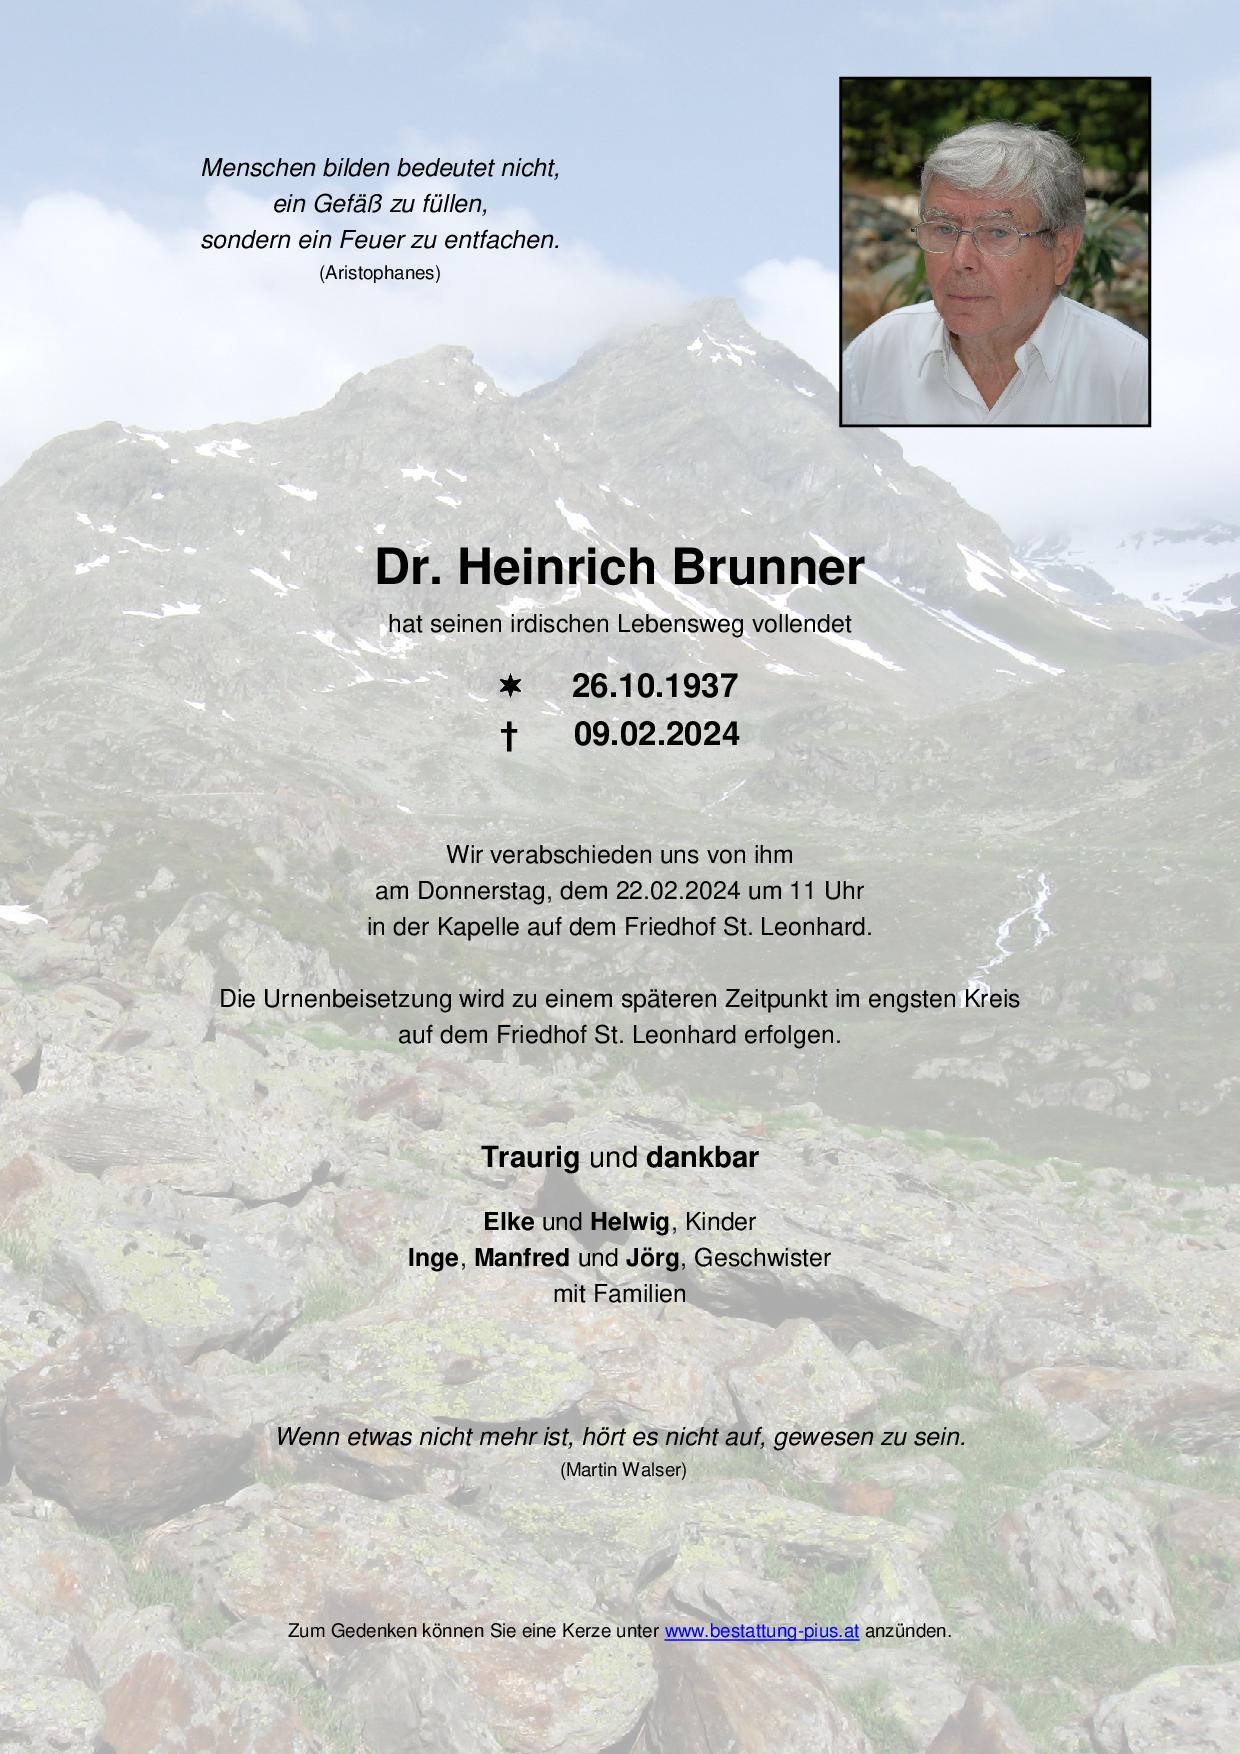 Dr. Heinrich Brunner